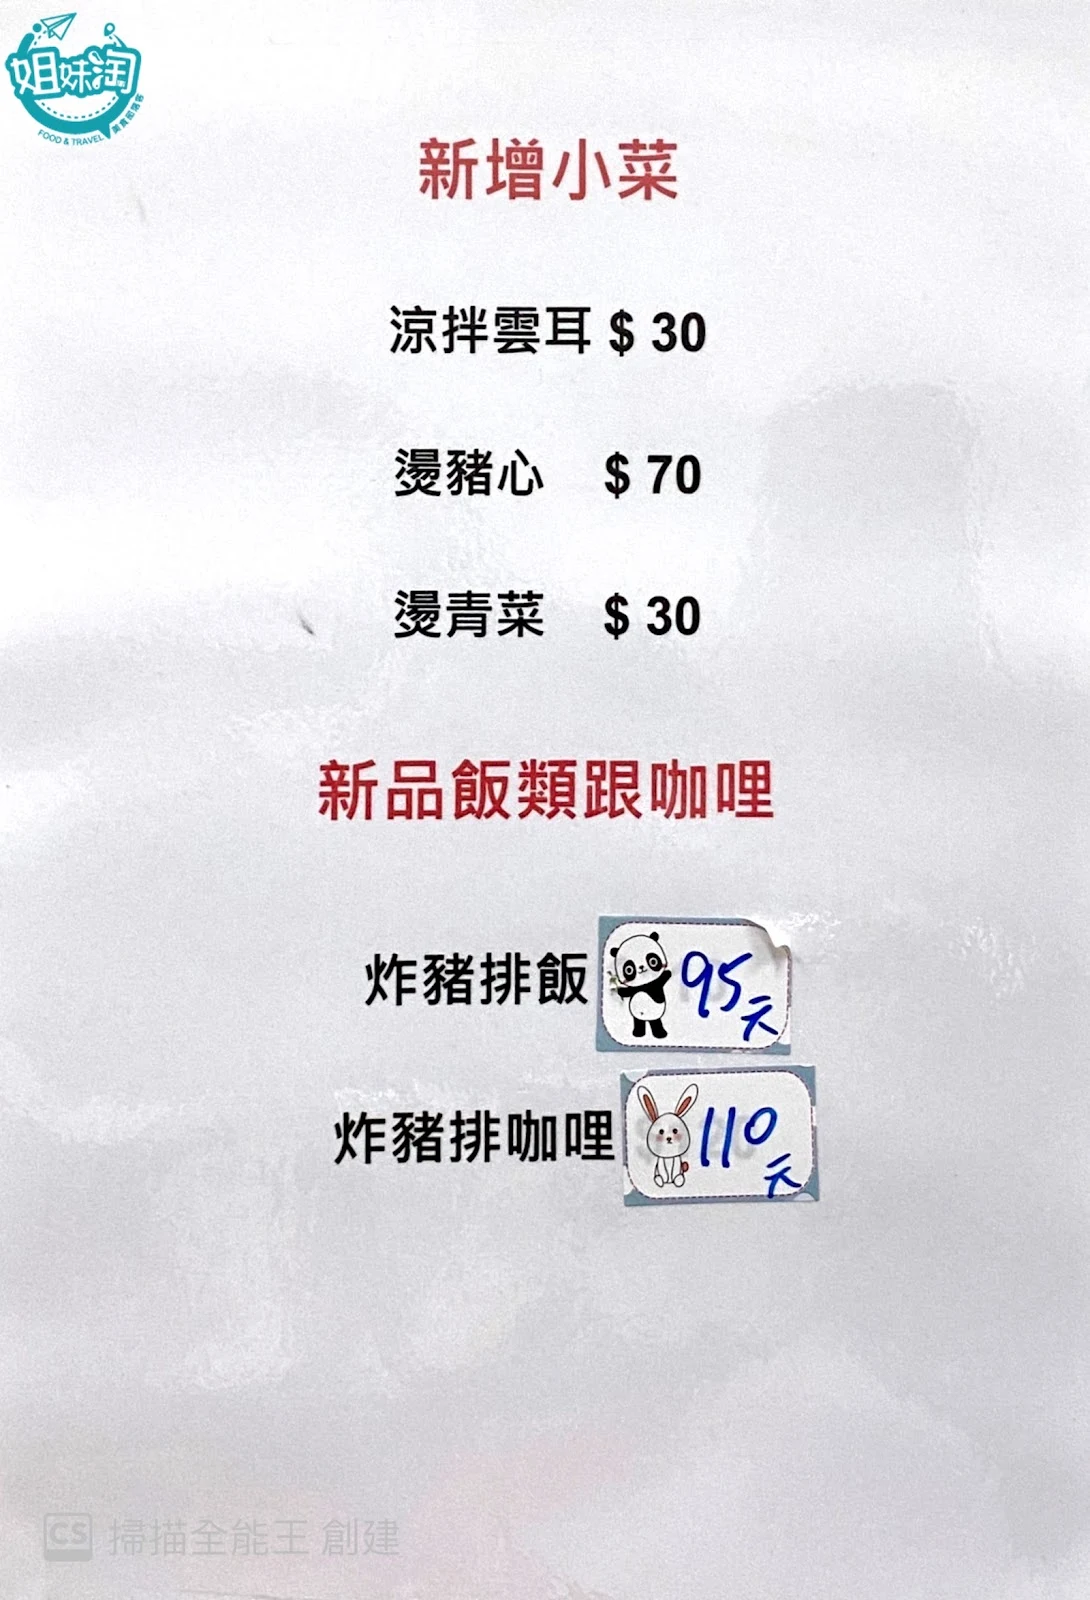 富國新加坡肉骨茶菜單